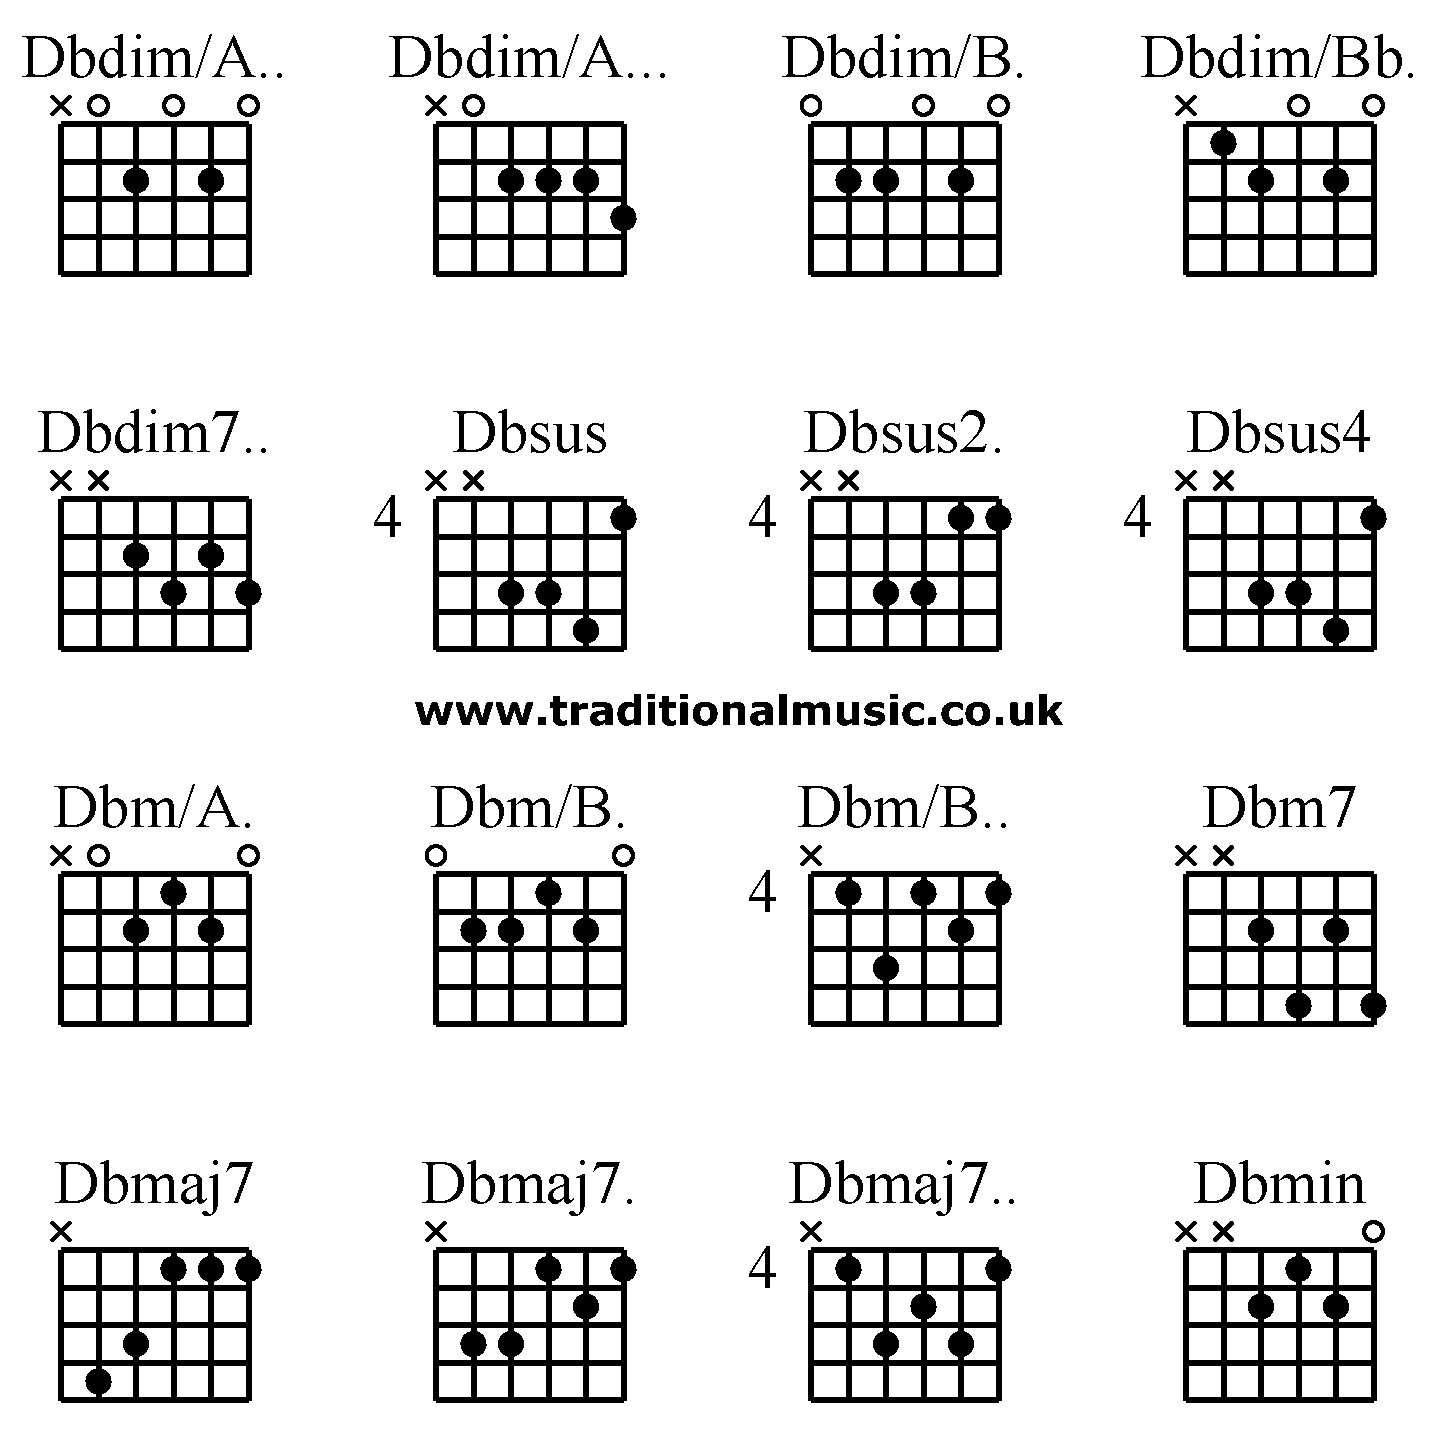 Advanced guitar chords:Dbdim/A.. Dbdim/A... Dbdim/B. Dbdim/Bb. Dbdim7.. Dbsus Dbsus2. Dbsus4 Dbm/A. Dbm/B. Dbm/B.. Dbm7 Dbmaj7 Dbmaj7. Dbmaj7.. Dbmin